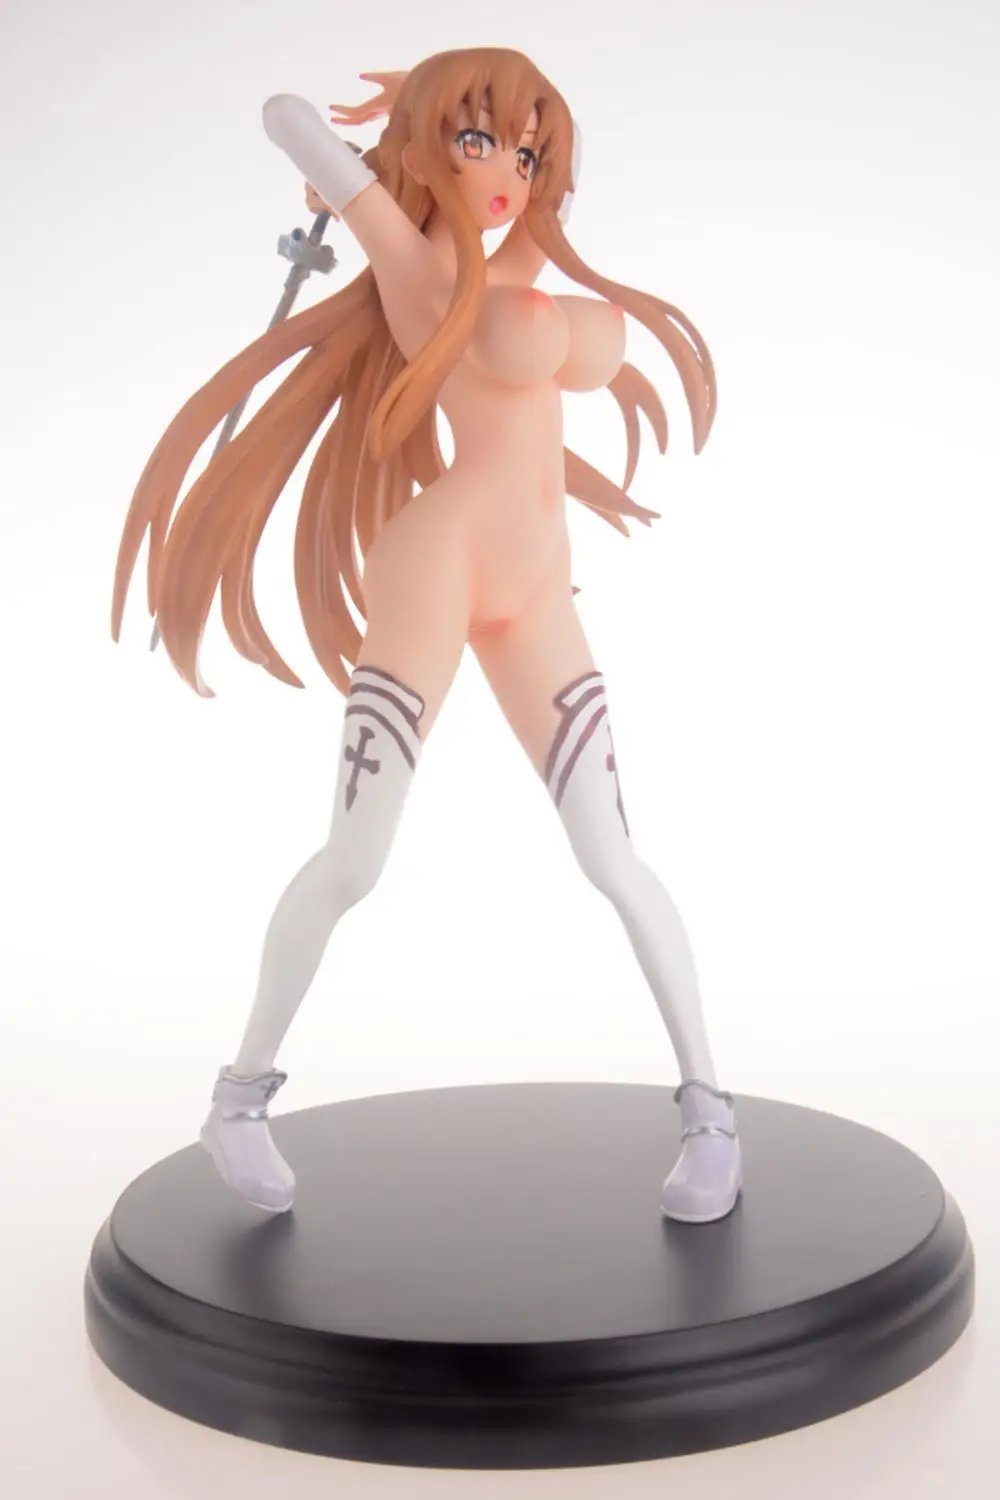 Asuna nude figure